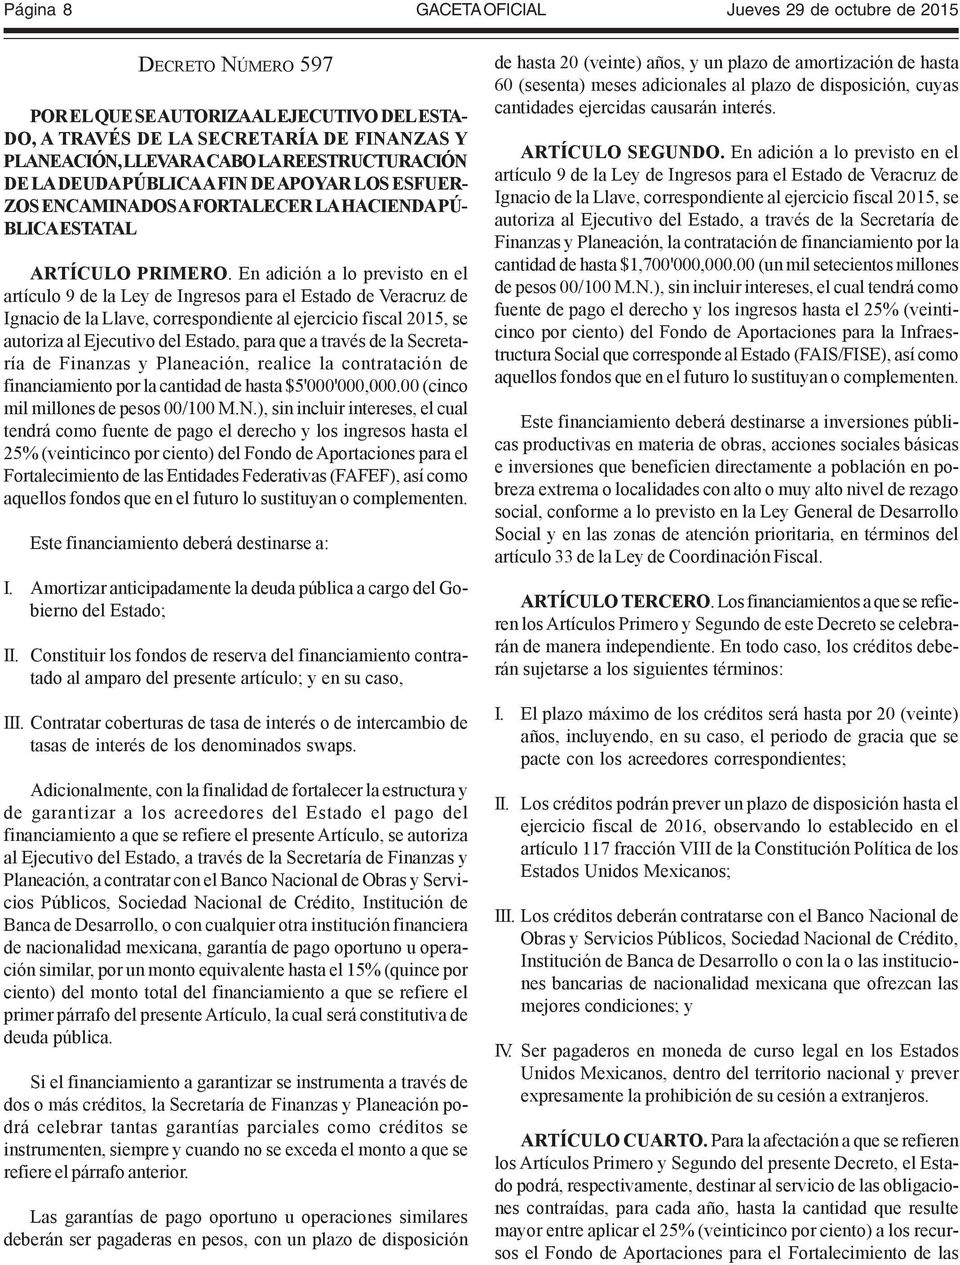 En adición a lo previsto en el artículo 9 de la Ley de Ingresos para el Estado de Veracruz de Ignacio de la Llave, correspondiente al ejercicio fiscal 2015, se autoriza al Ejecutivo del Estado, para